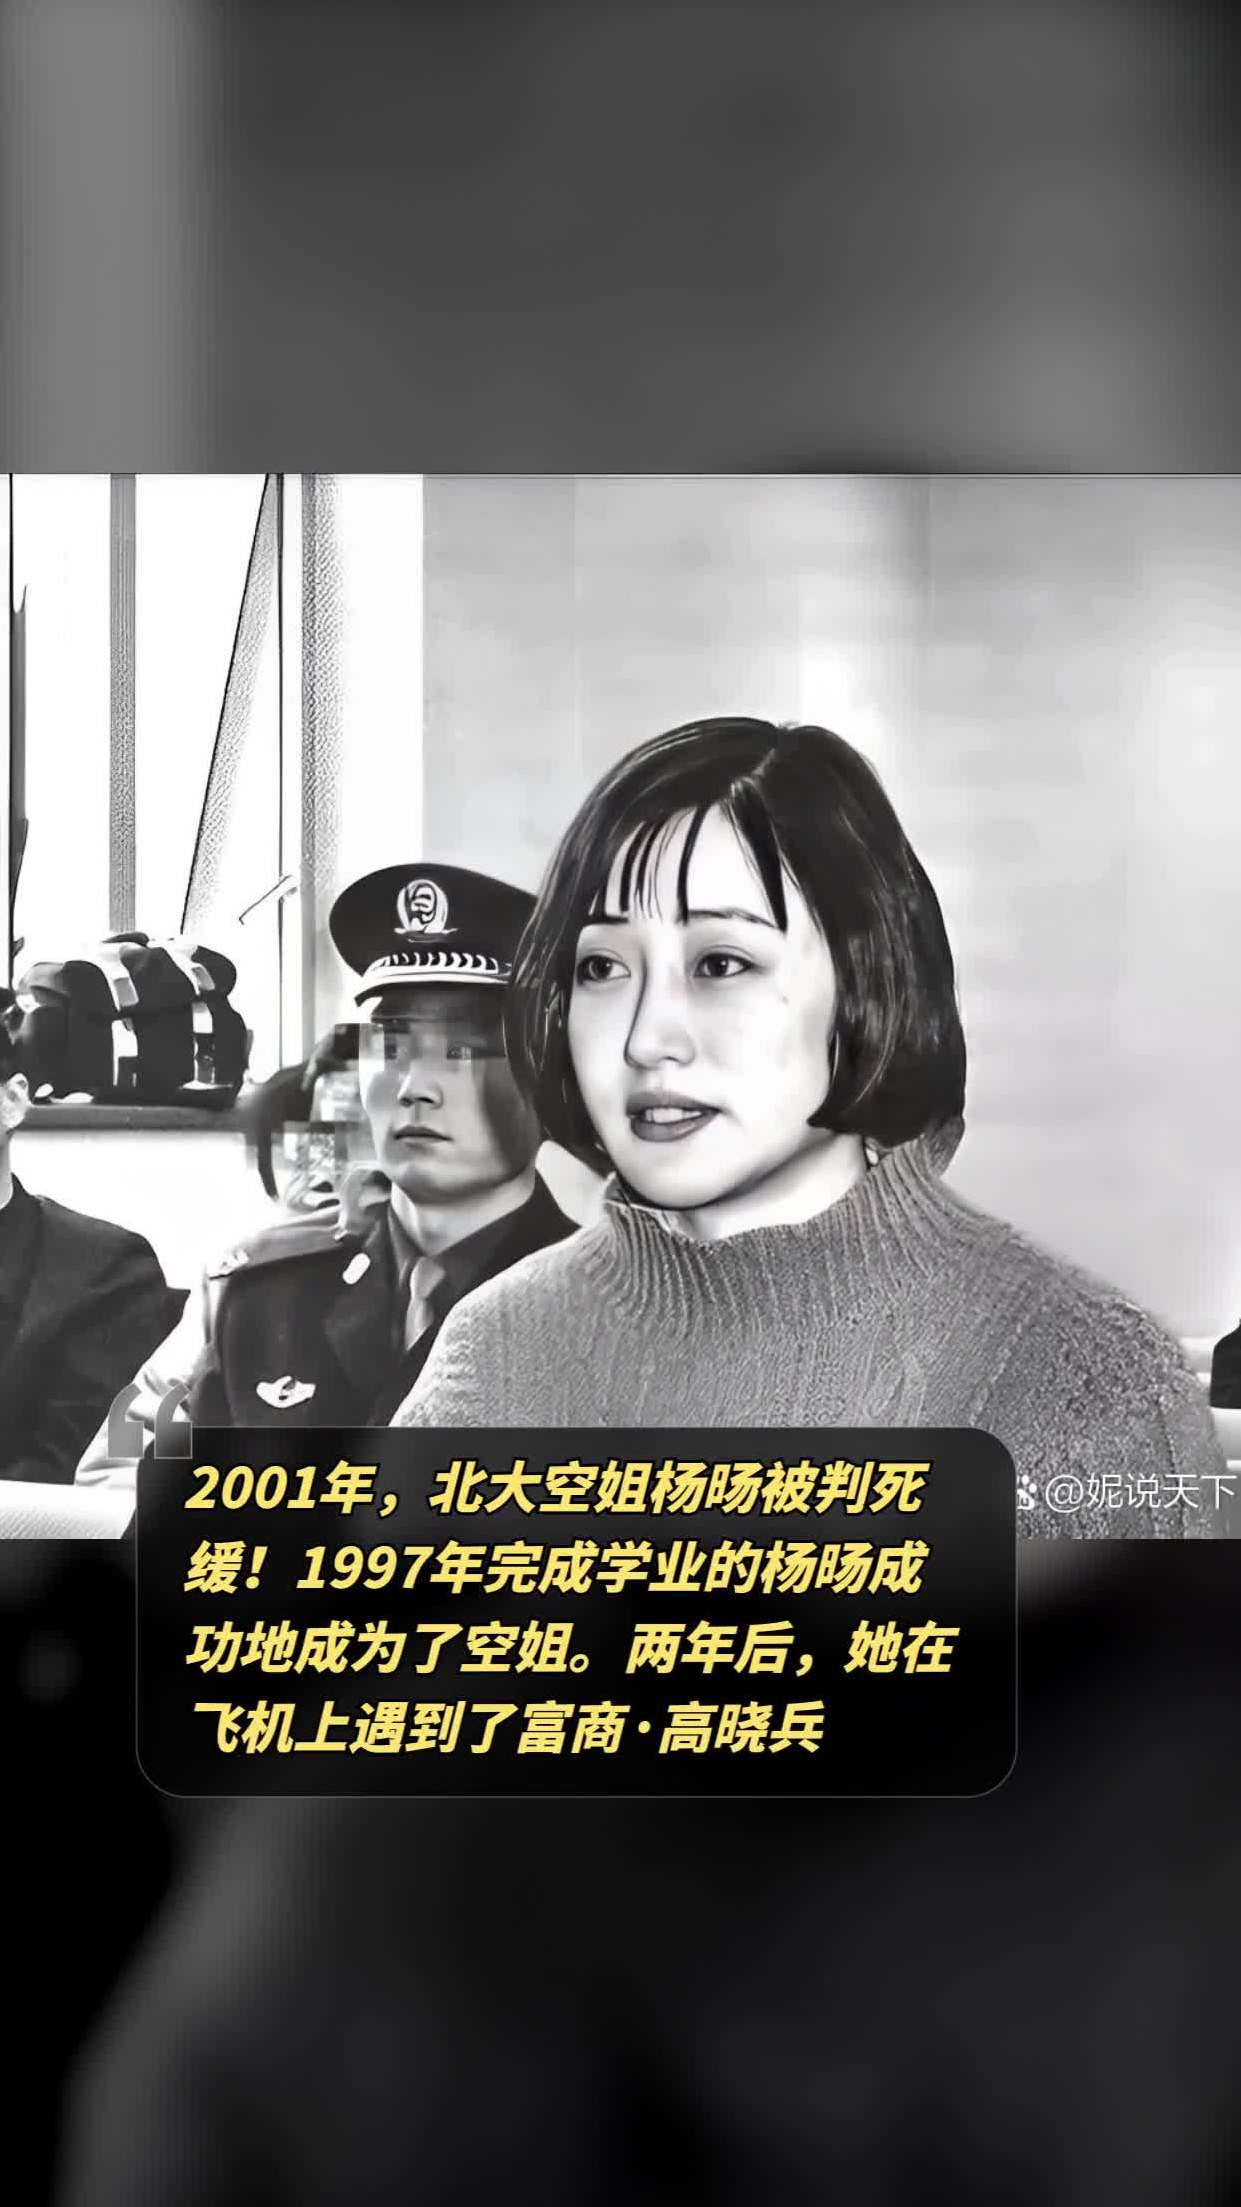 1997年完成学业的杨旸成功地成为了空姐